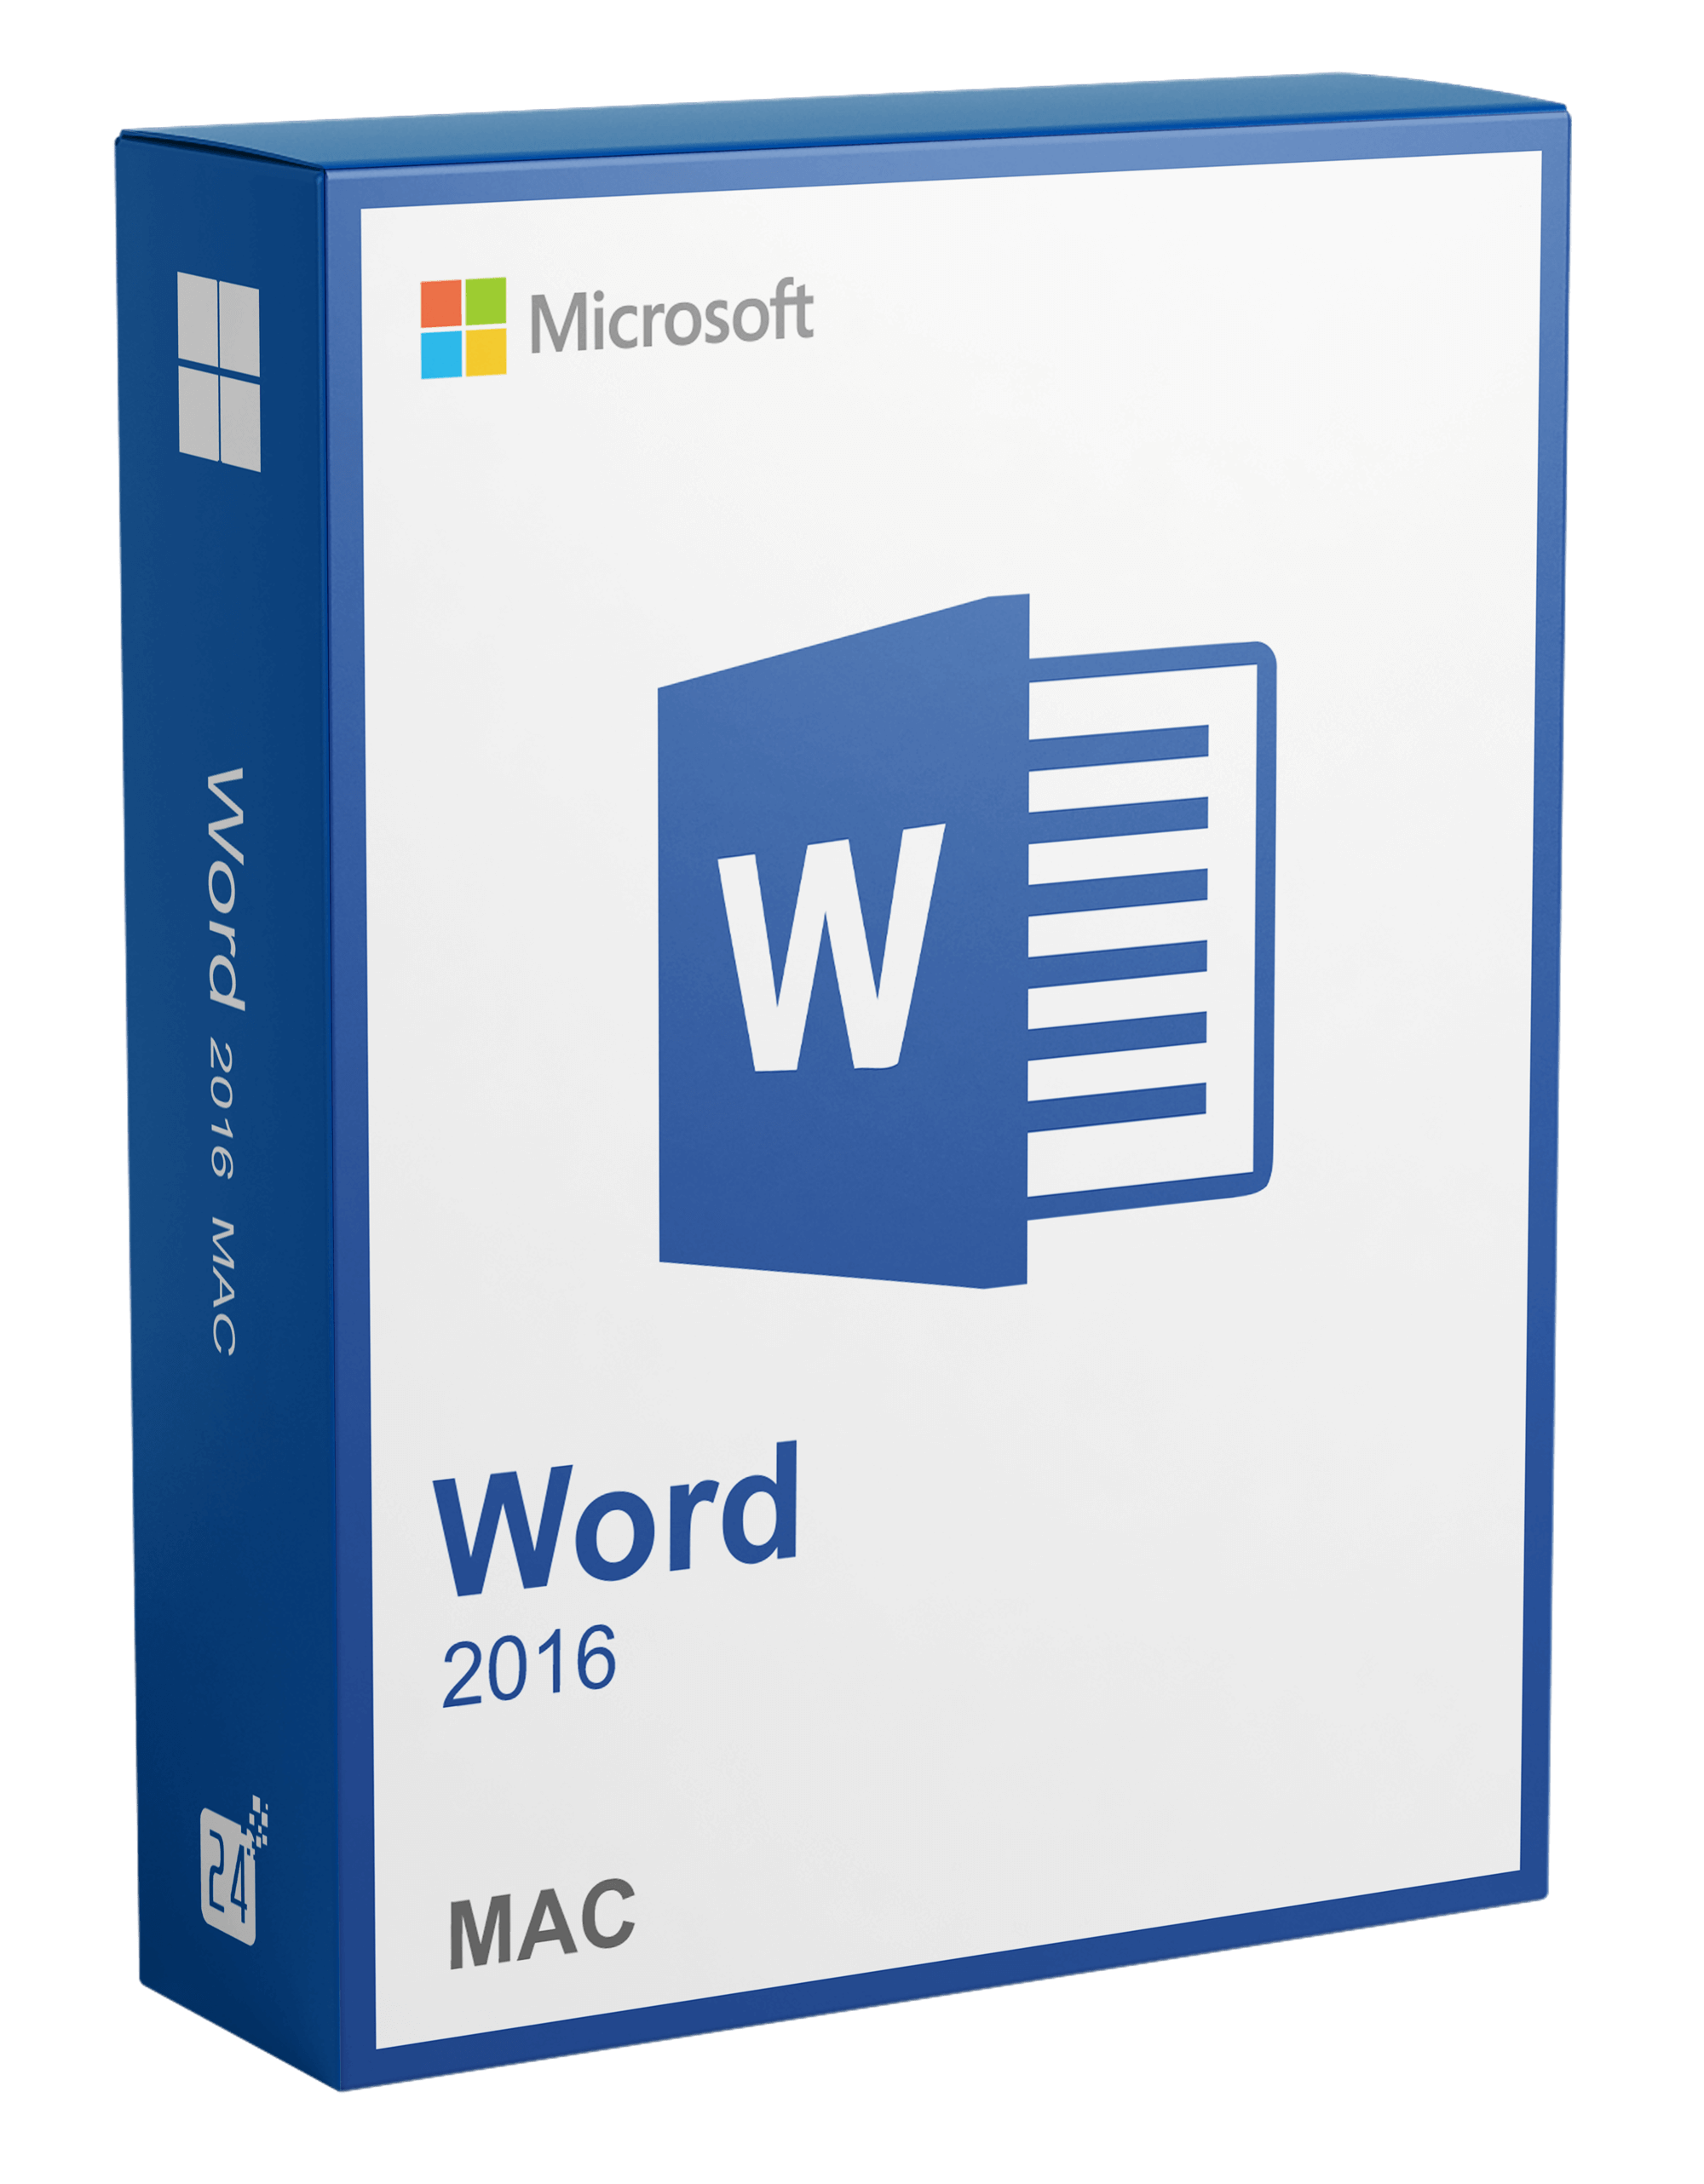 Microsoft Word MAC 2016